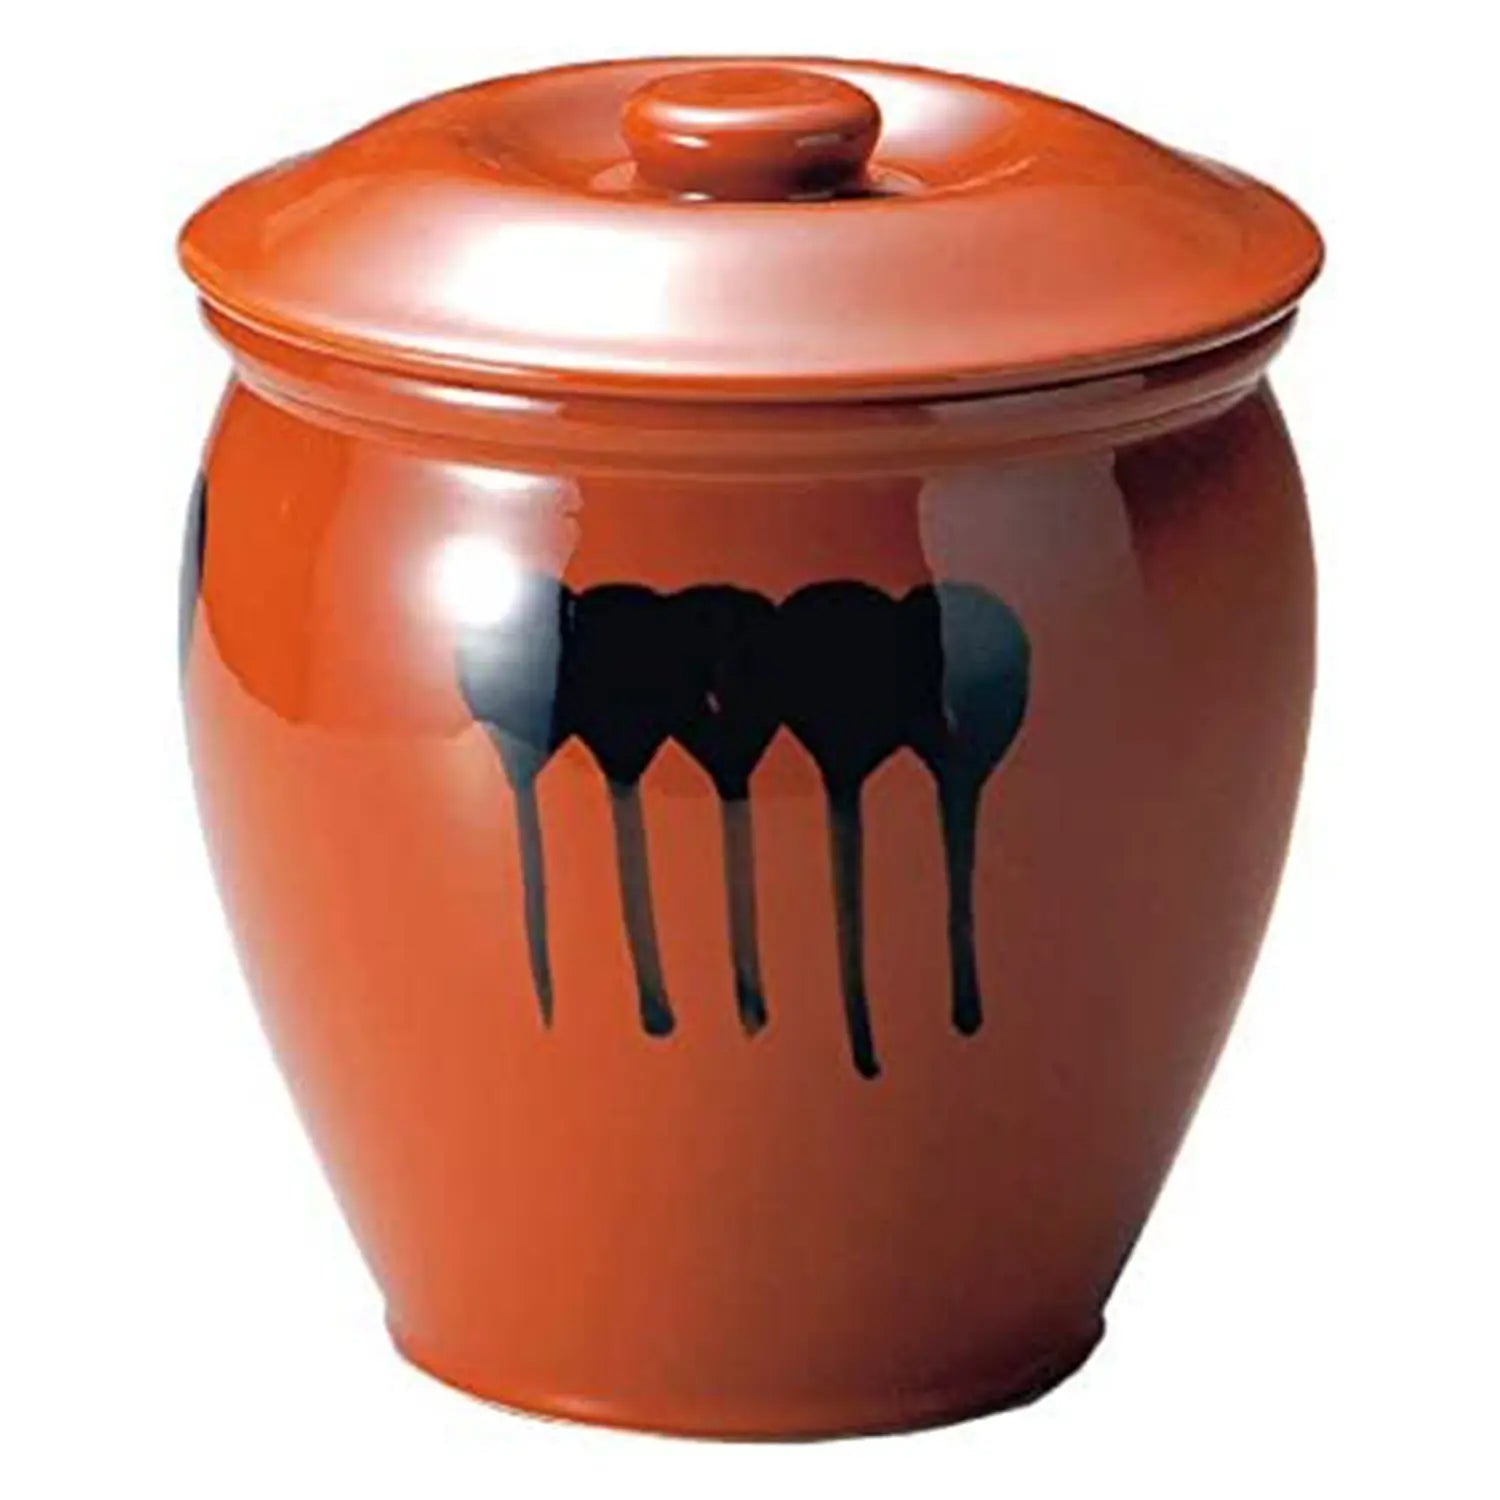 Ceramic Jar - Buy Condiment Jar Set Online In India